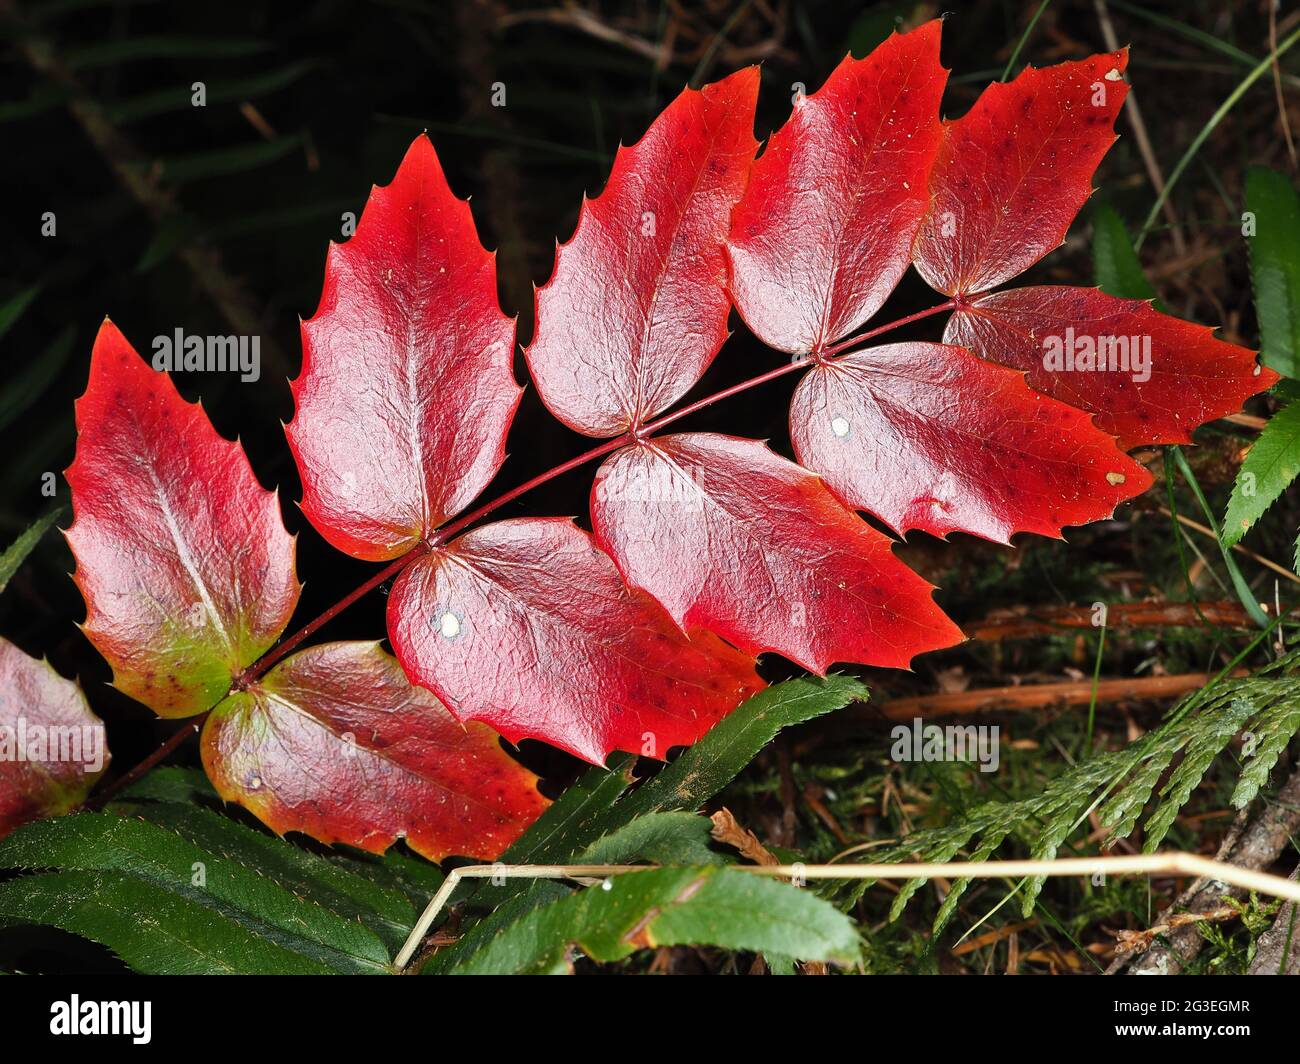 Red leaves of Oregon grape (Mahonia aquifolium) Stock Photo